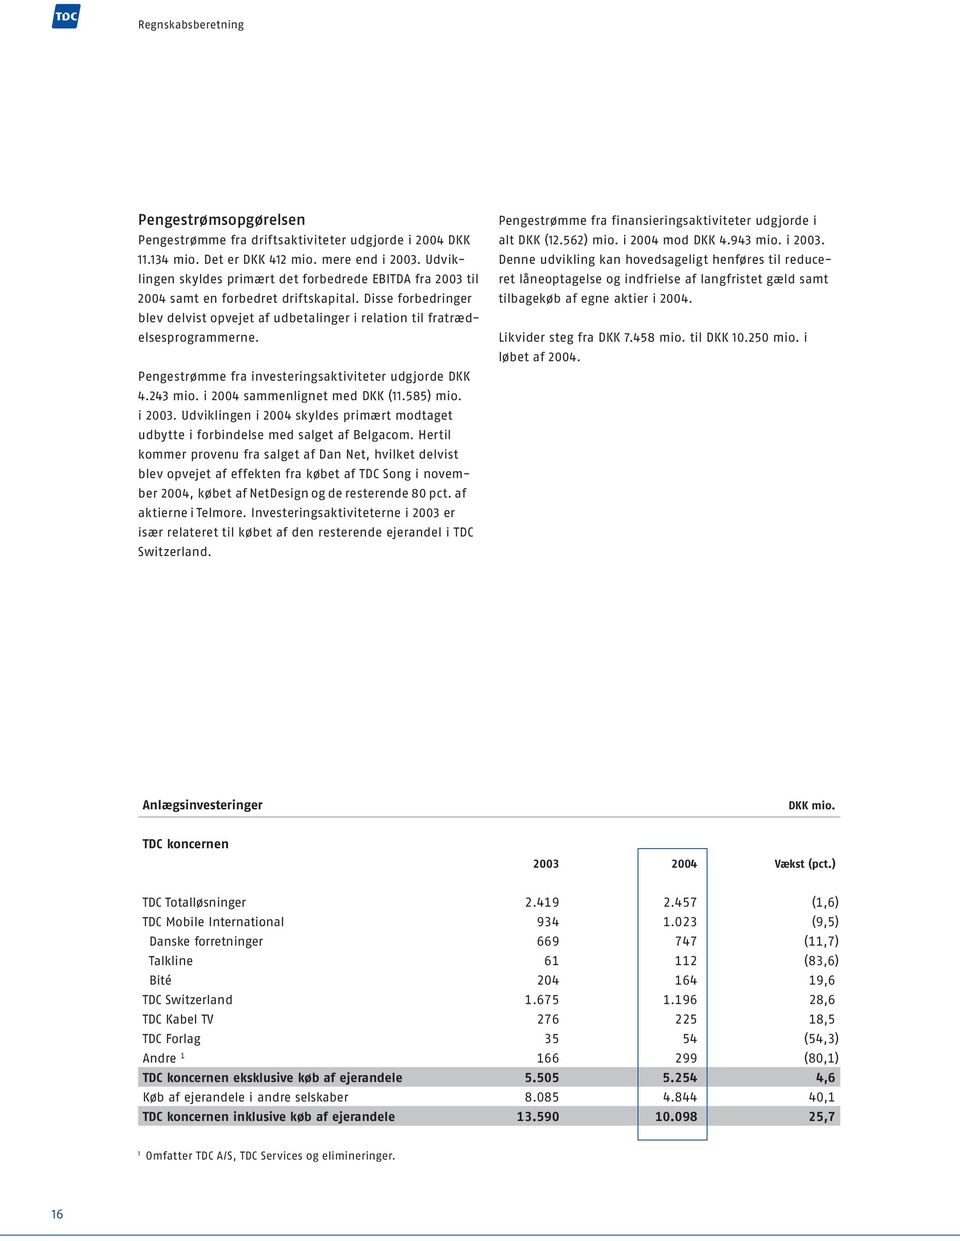 Pengestrømme fra investeringsaktiviteter udgjorde DKK 4.243 mio. i 2004 sammenlignet med DKK (11.585) mio. i 2003.